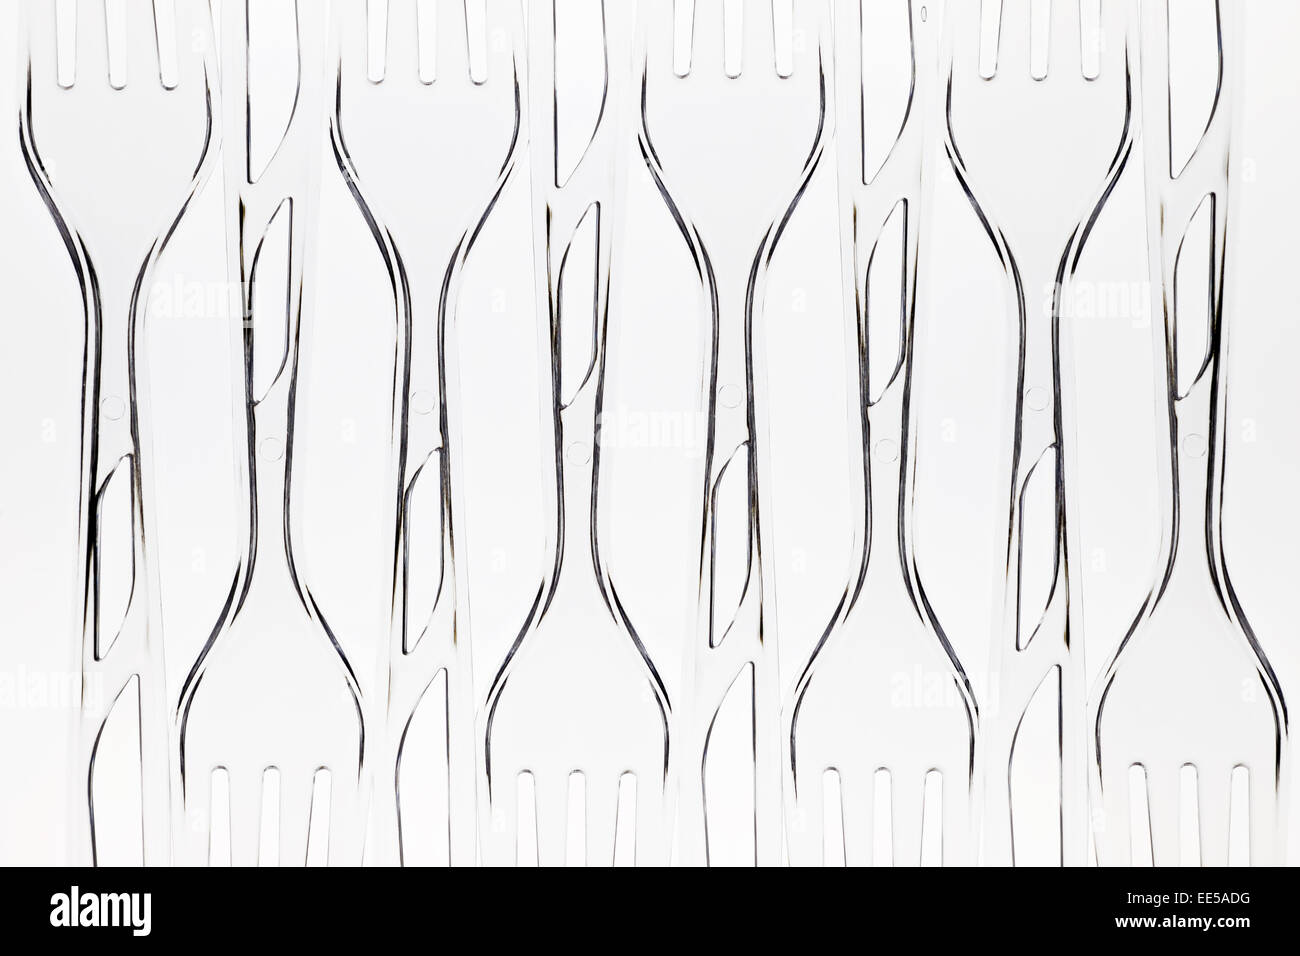 Durchsichtigen Kunststoff Picknick Gabeln angelegt in einem Muster auf weißem Hintergrund Stockfoto